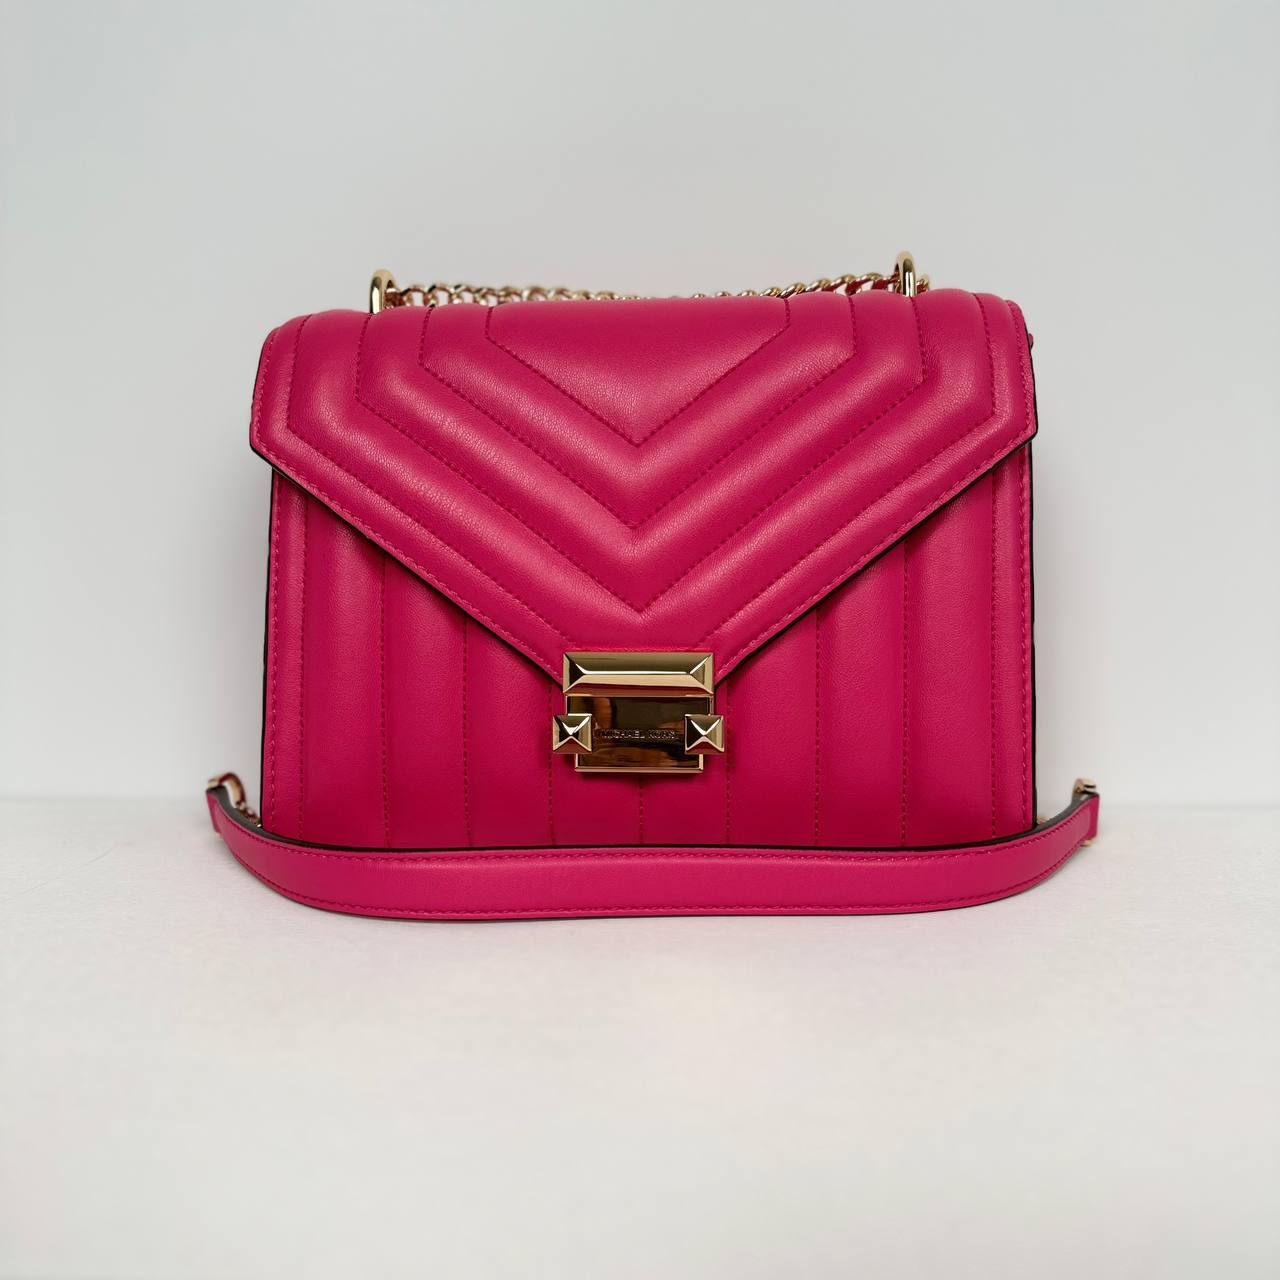 MK Whitney Medium Flap Chain Shoulder Bag in Electric Pink (35R4GWHL6U)